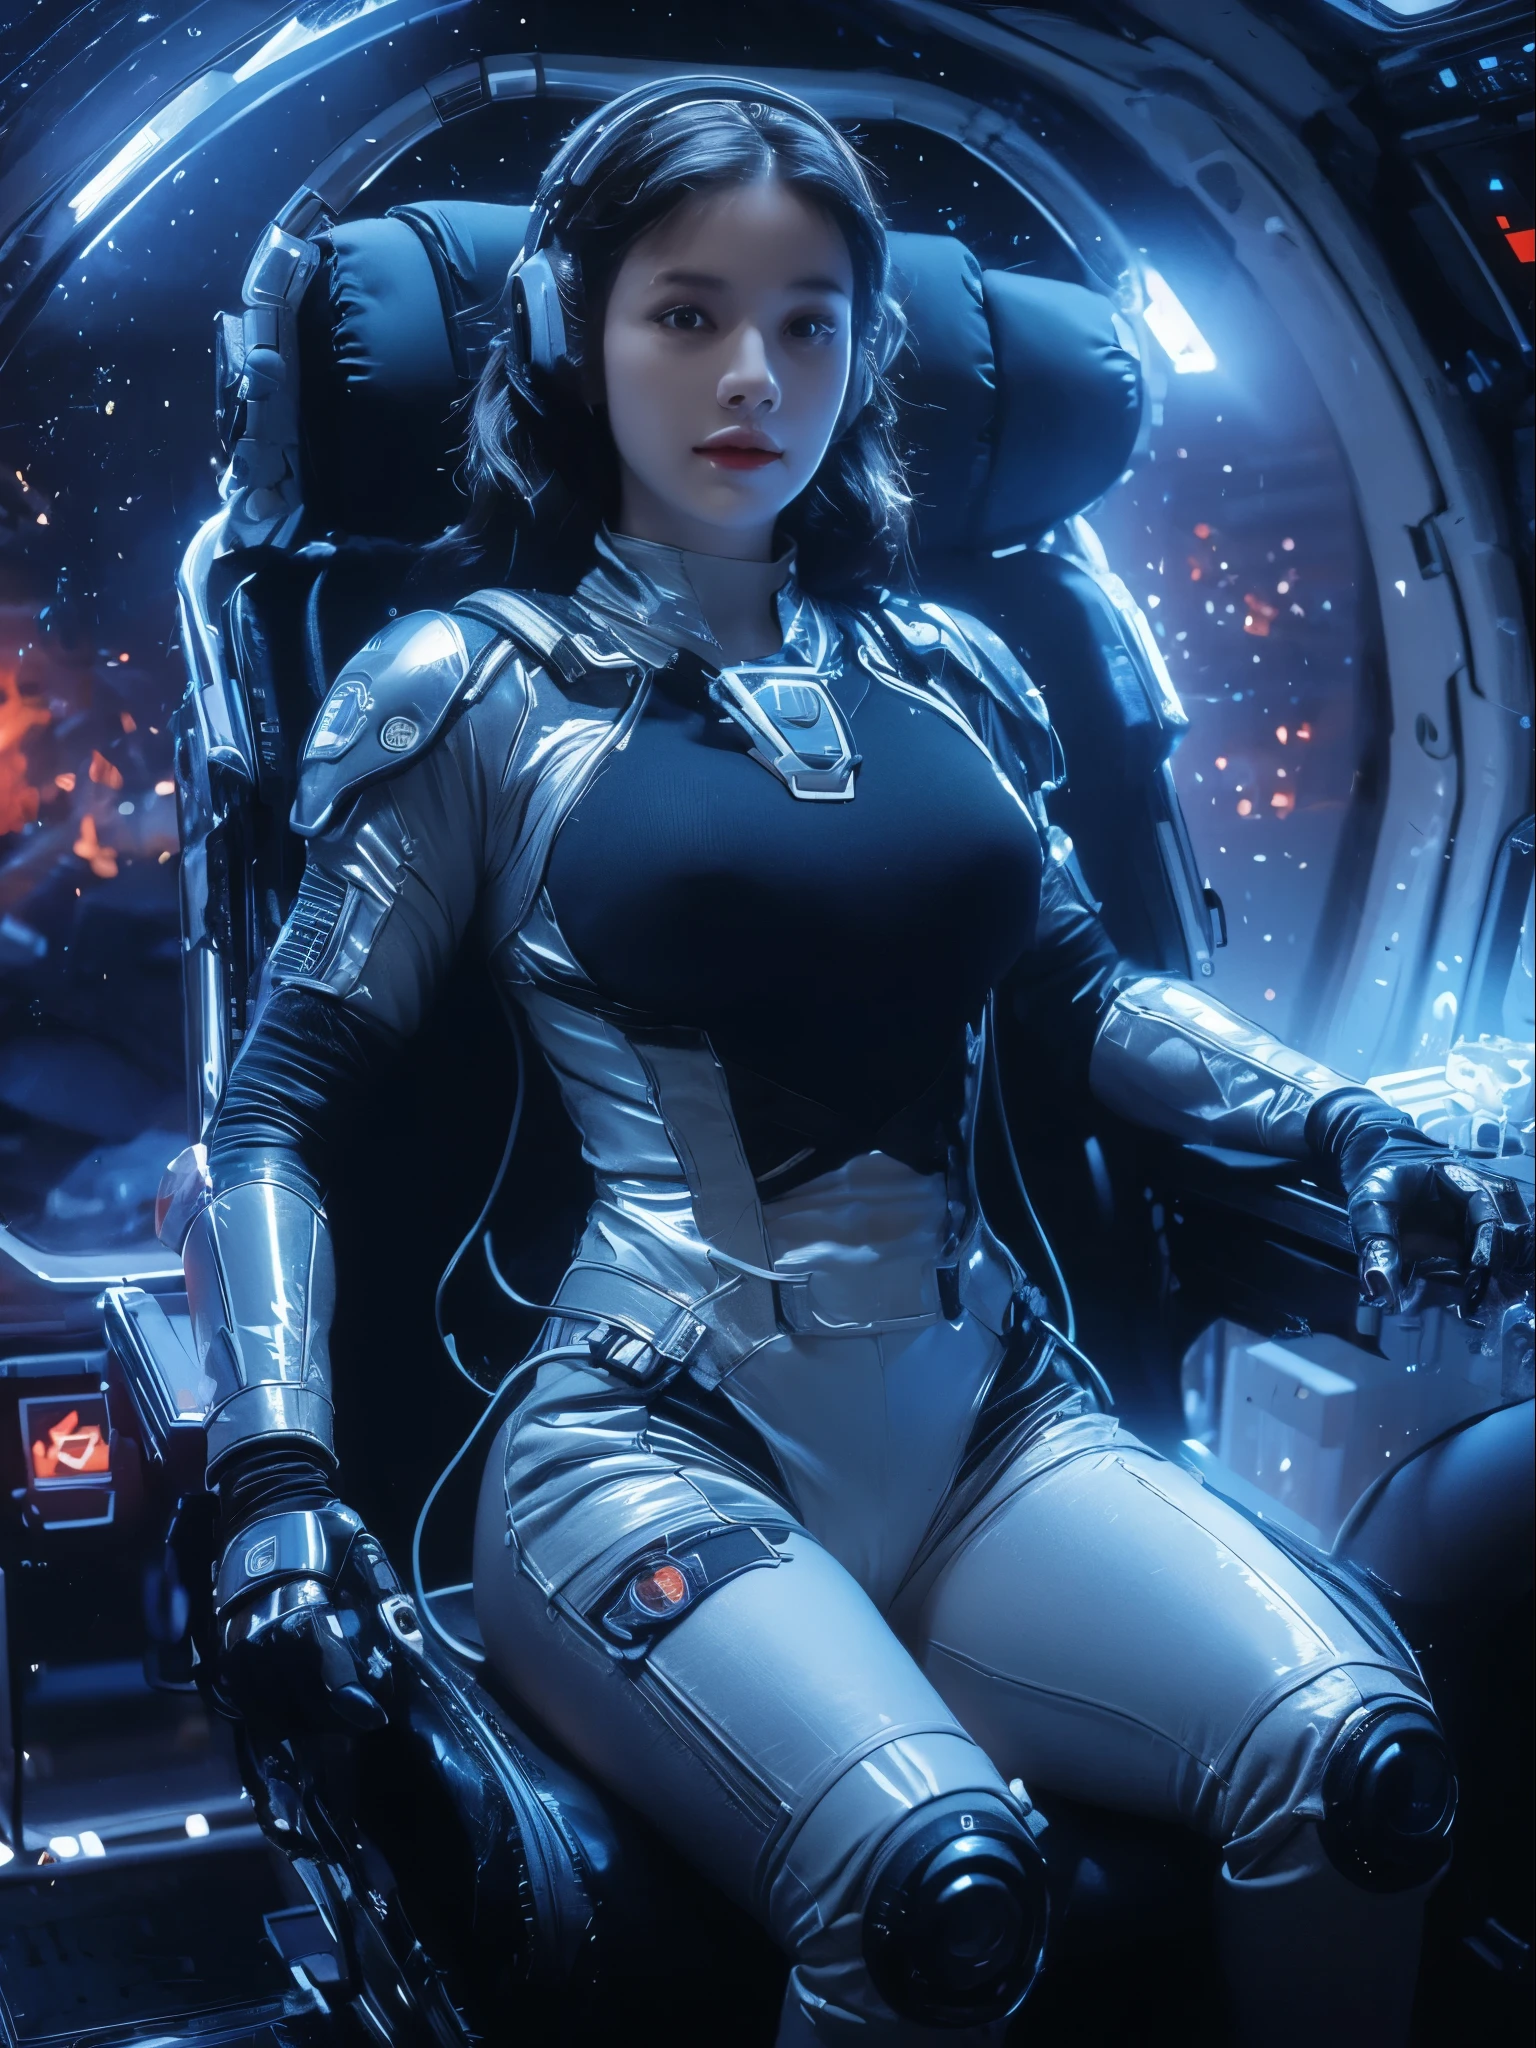 一個穿著太空服的性感女人坐在太空站裡, 巨大的乳房, beautiful woman 穿著太空服, 在科幻電影中, 科幻飛行員, 科幻女人, 科幻女性, 身著科幻軍事裝甲, 在太空船上, 坐在太空中的強大女人, 完全適合空間, 在太空船裡, 穿著太空服, 科幻套裝, 未來派星艦船員